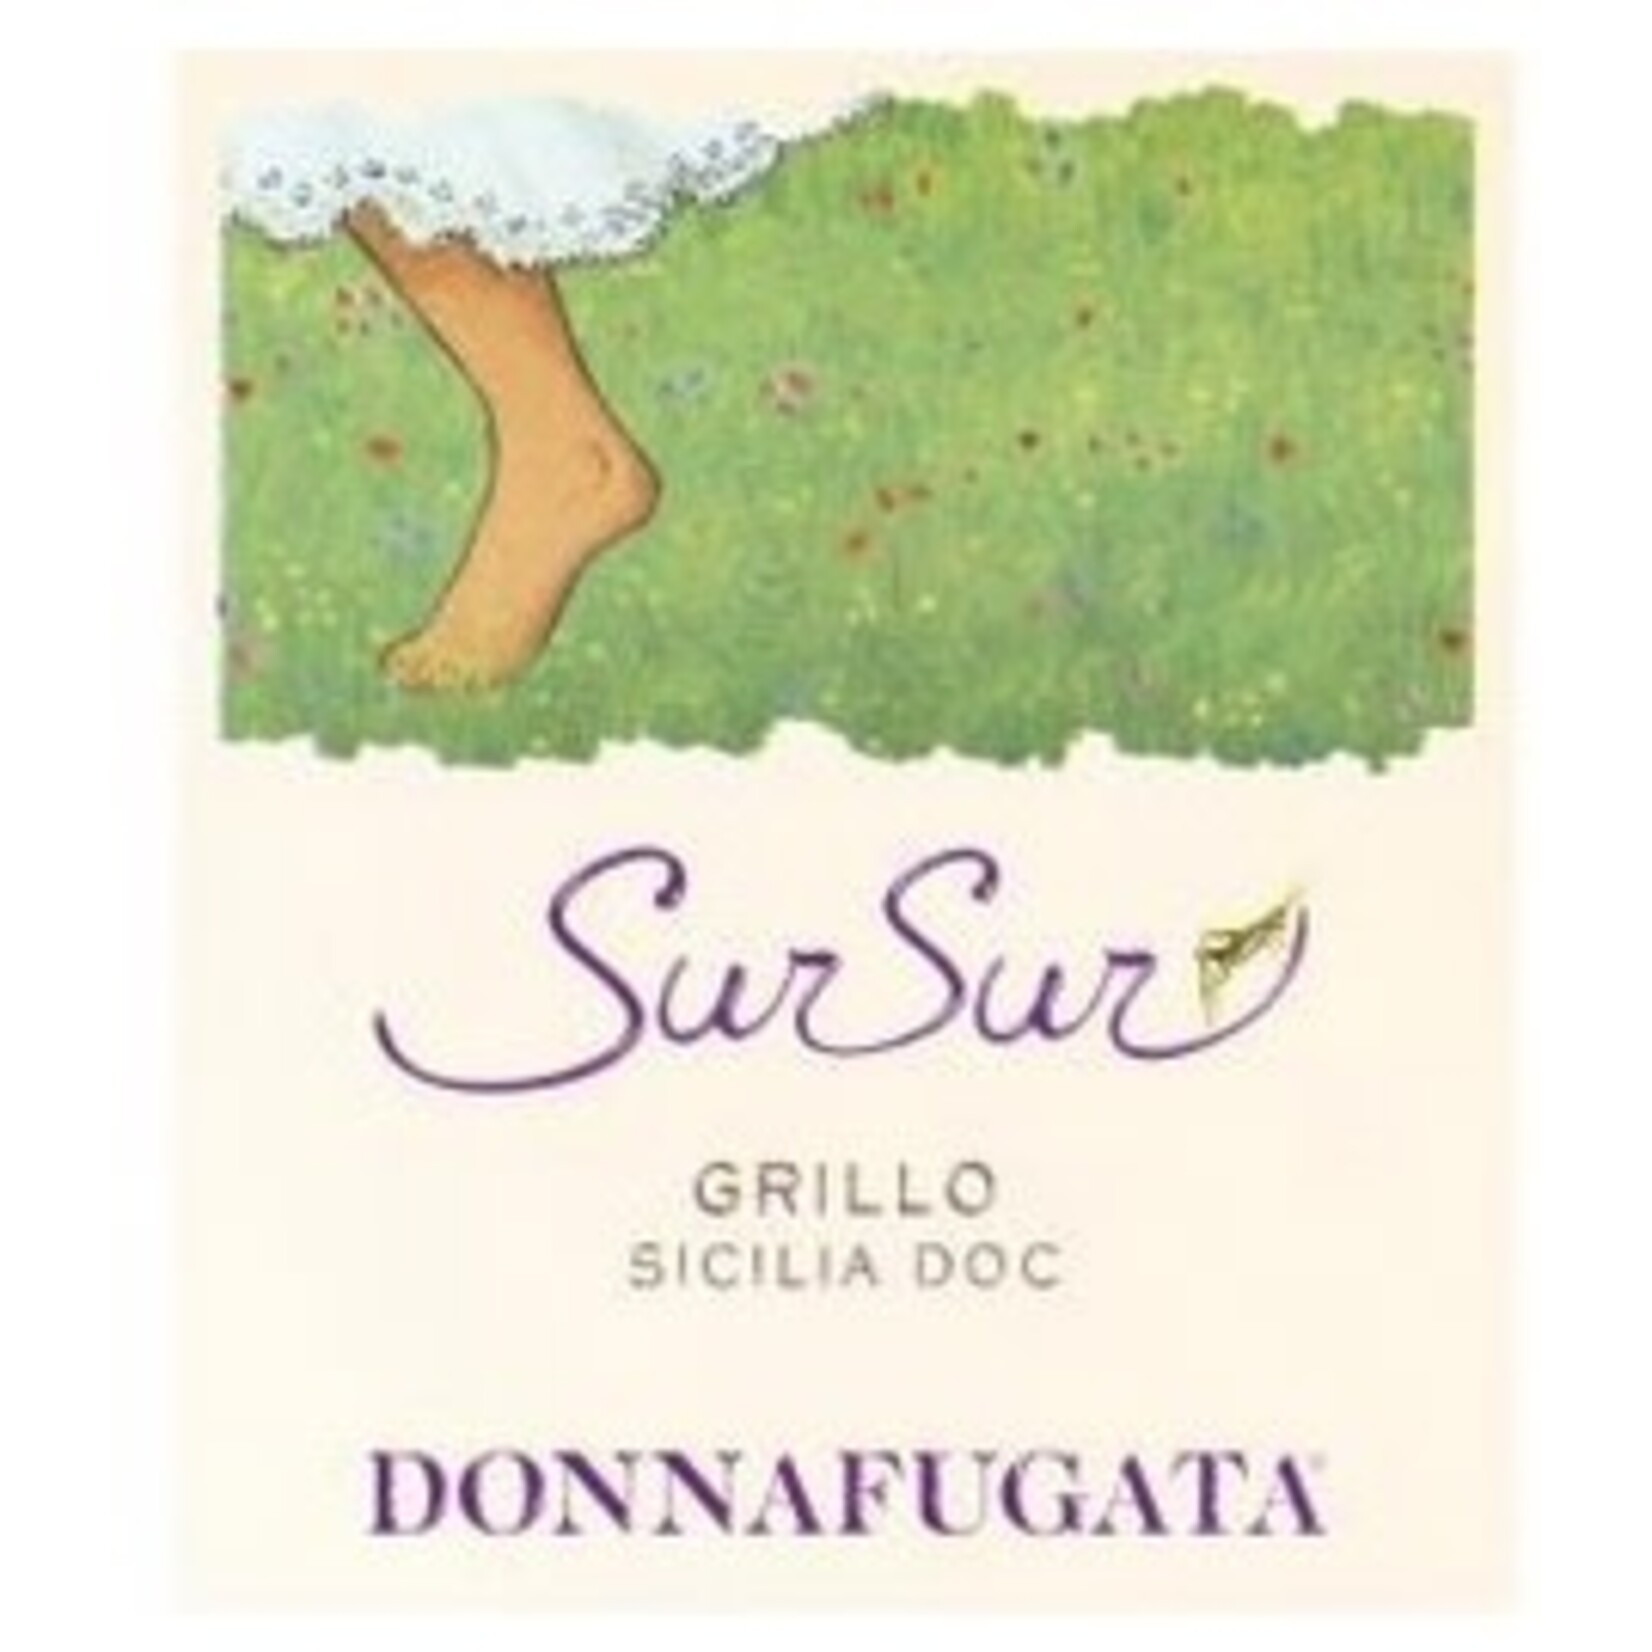 Wine Donnafugata Sicilia DOC Grillo Sur Sur 2021